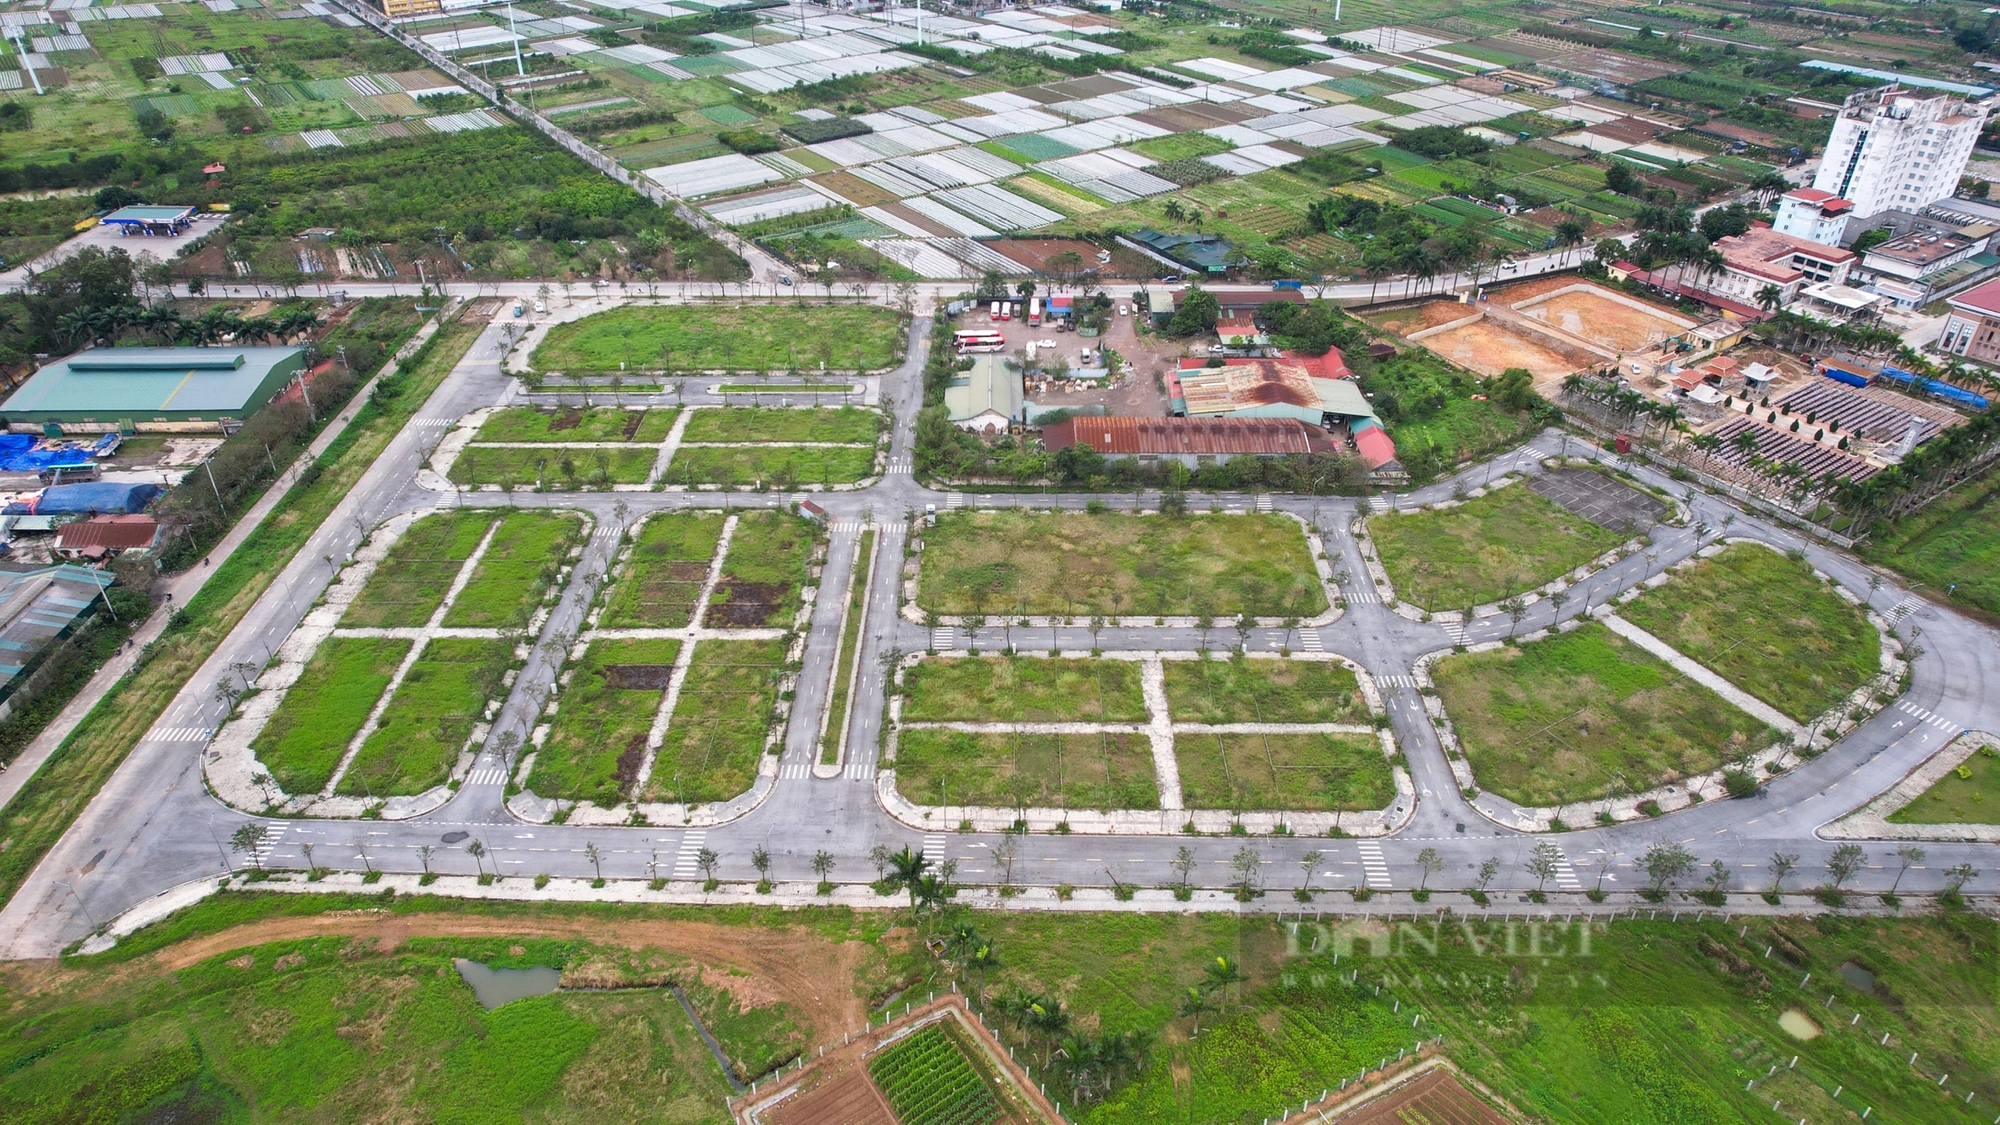 Hiện trạng khu đất rộng hơn 16.000 m2 vừa bị Hà Nội hủy kết quả trúng đấu giá- Ảnh 1.